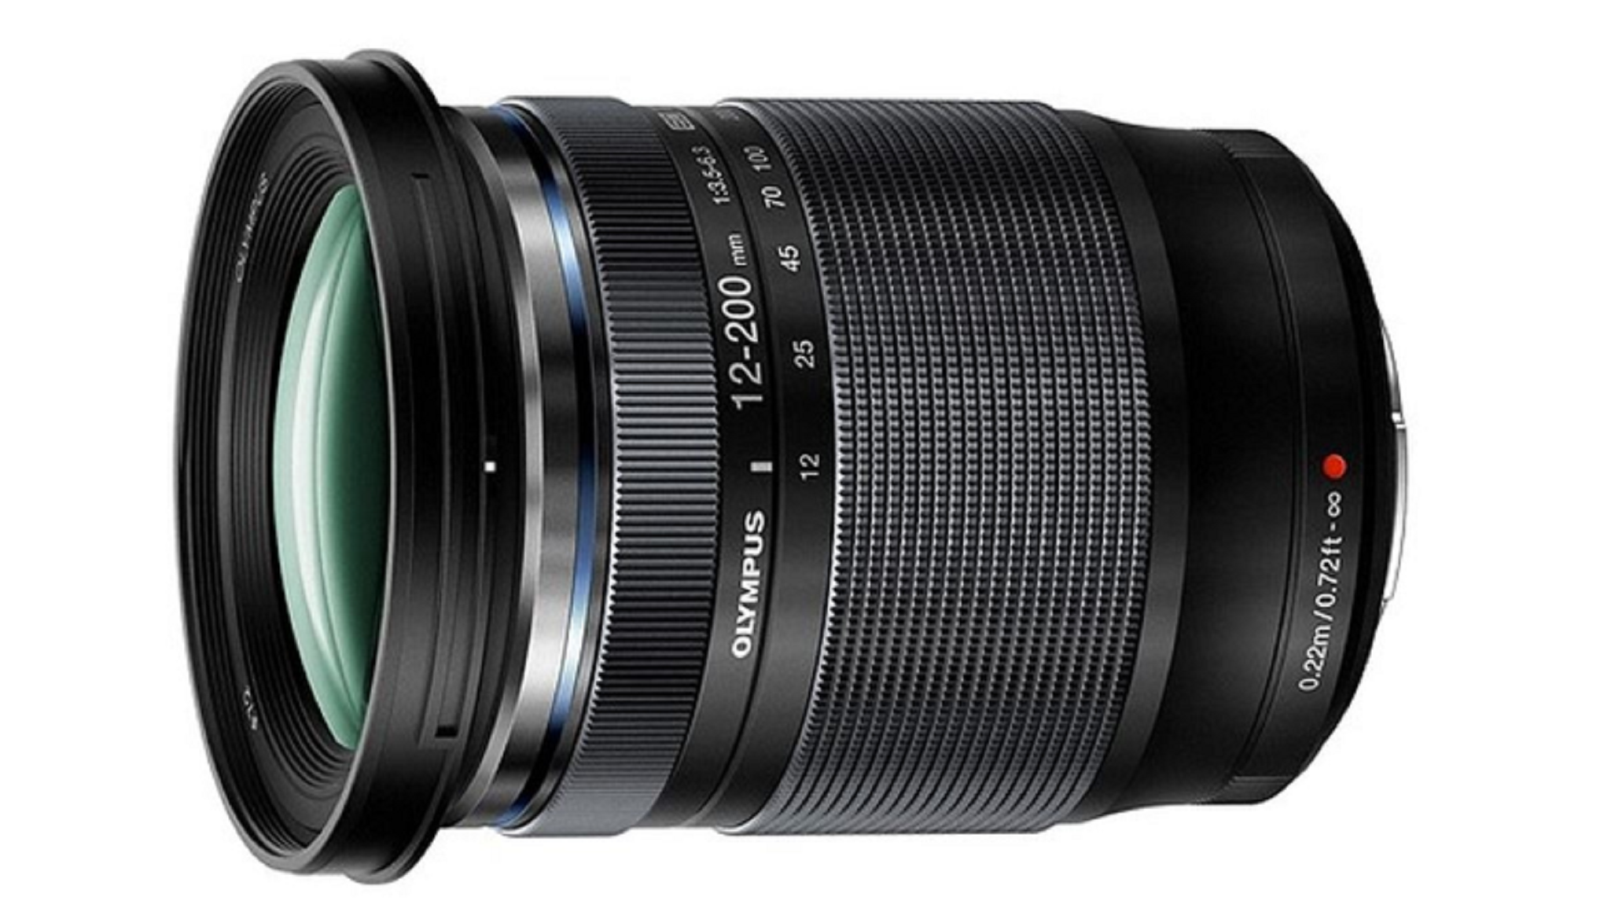 Olympus ra mắt ống kính siêu zoom mới, M.Zuiko Digital ED 12-200mm f / 3.5-6.3